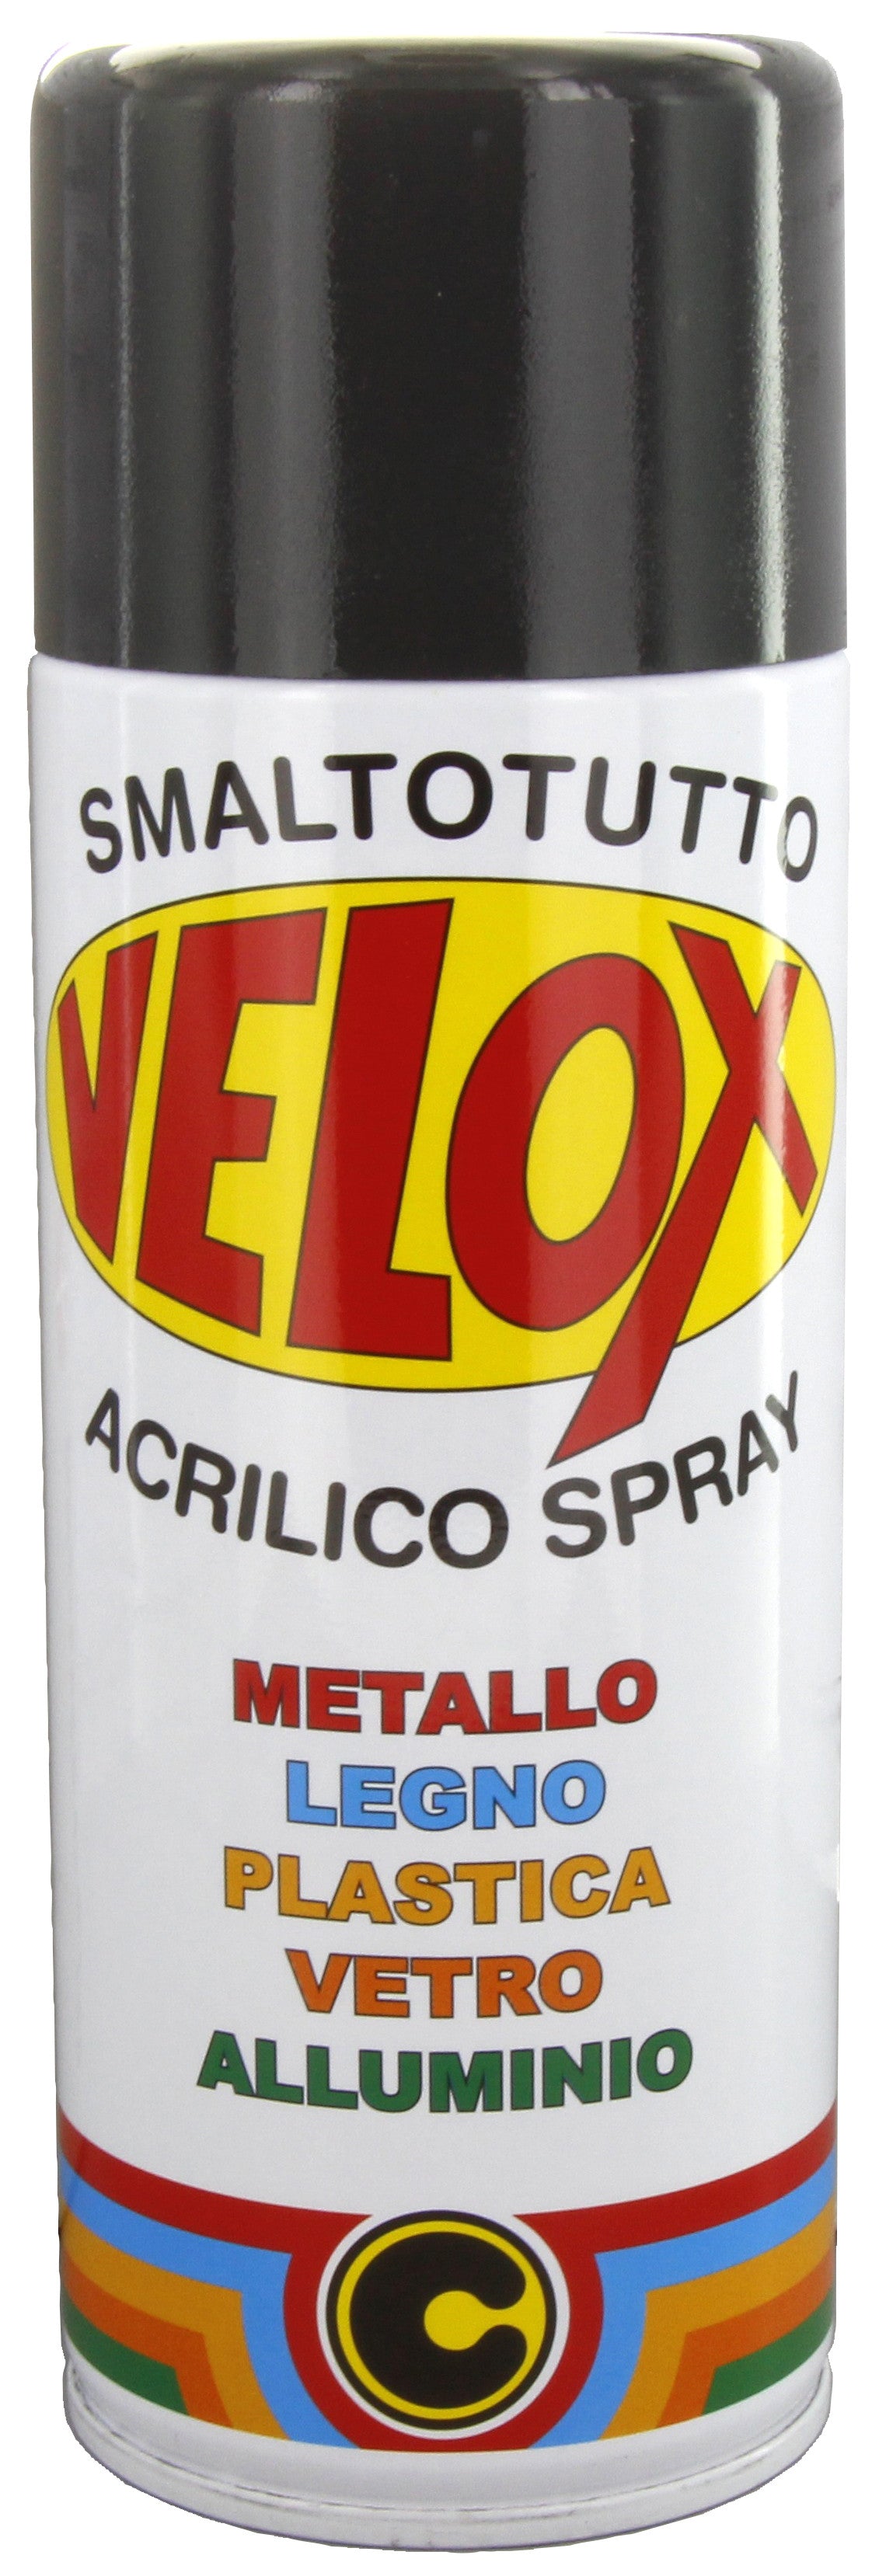 Velox spray acrilico grigio antracite ral7016 ITAL G.E.T.E.